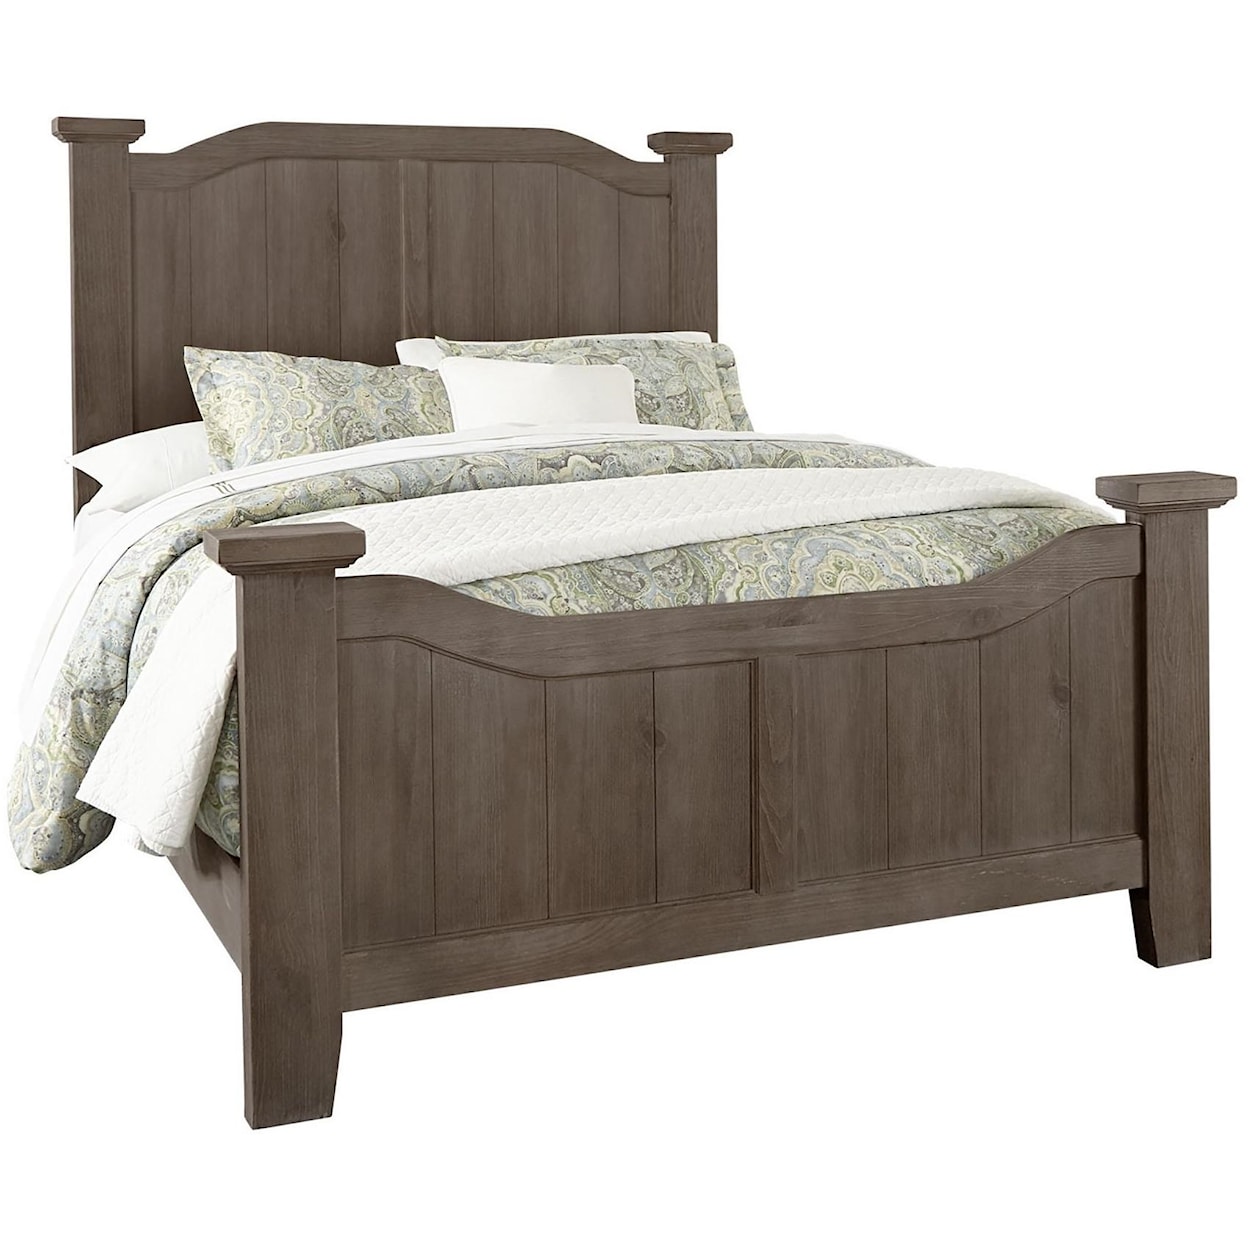 Vaughan Bassett Sawmill 692 558 855 922 Transitional Queen Arch Bed Standard Furniture Bed